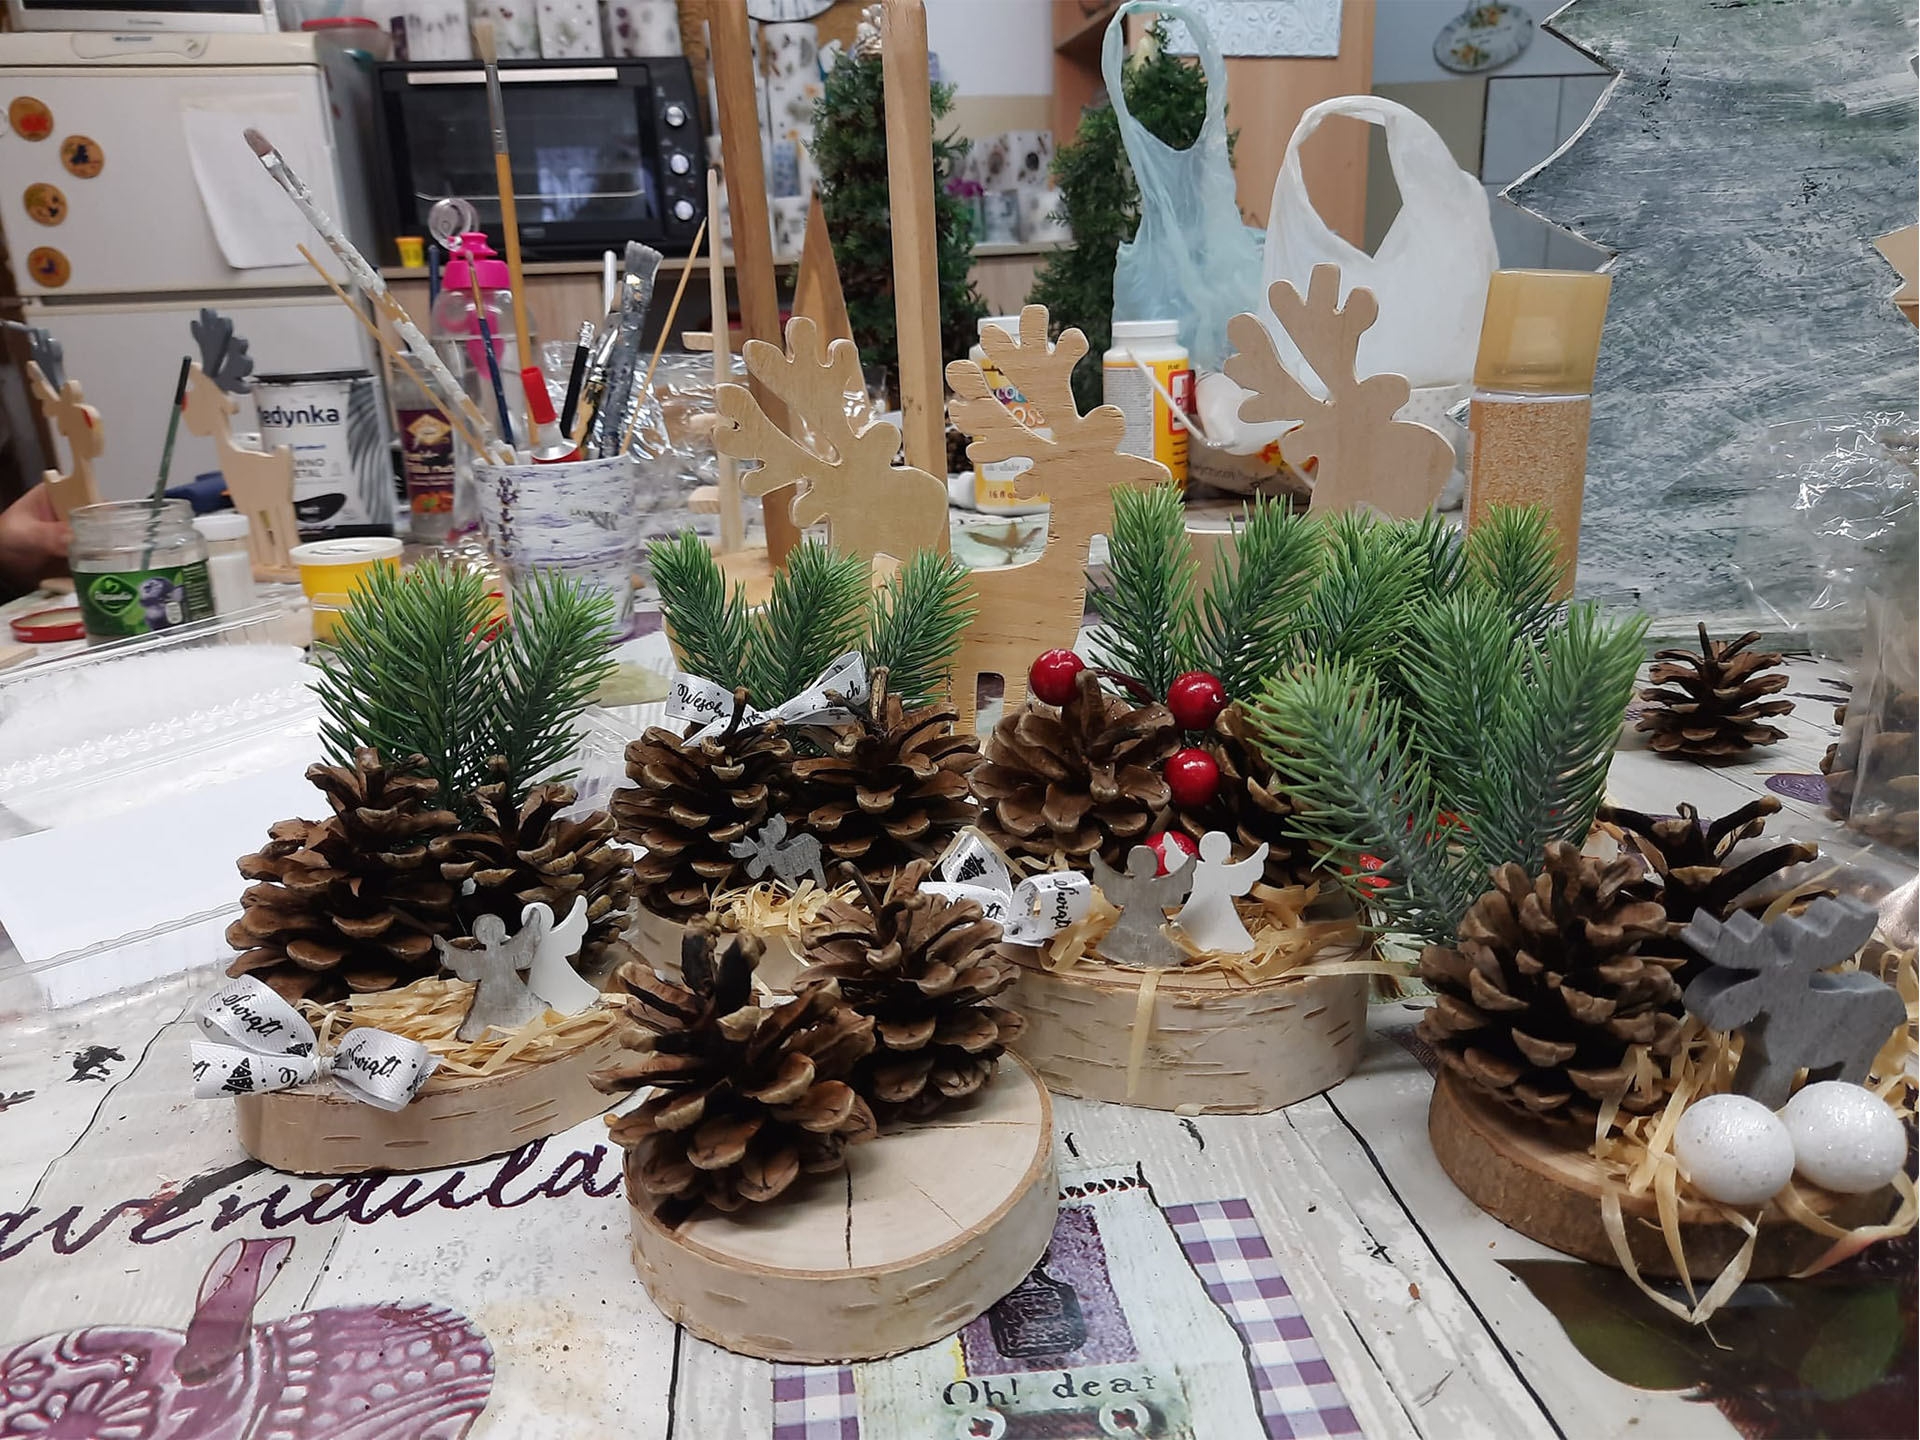 Ozdoby świąteczne leżące na stole, wykonane z naturalnych elementów tj. szyszki czy zielone gałązki.